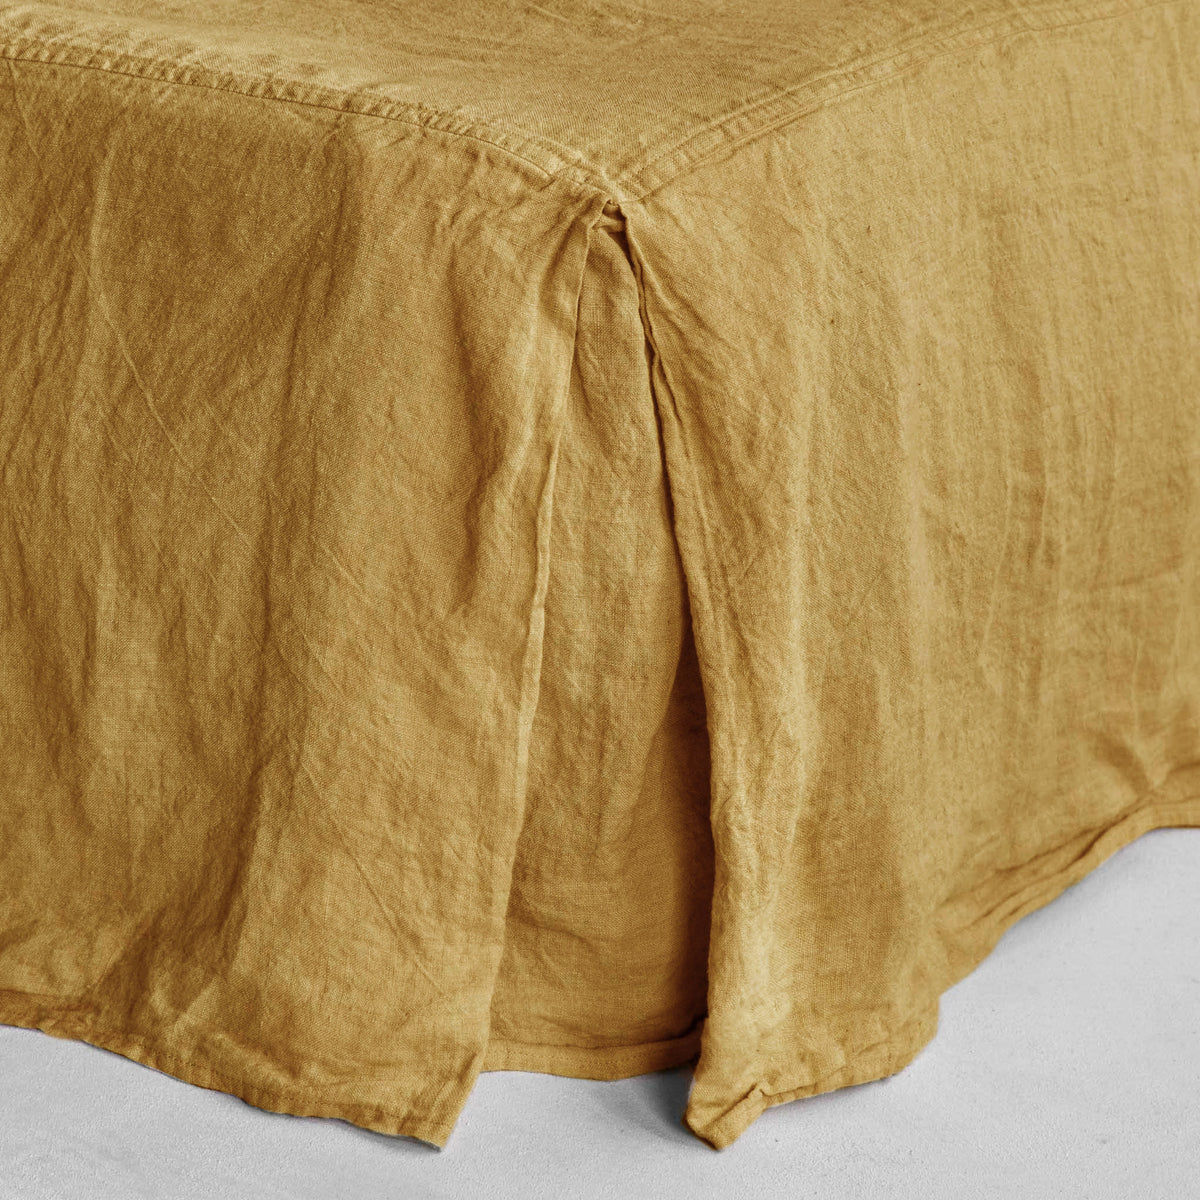 Basix Linen Bed Skirt/Valance - Maiz